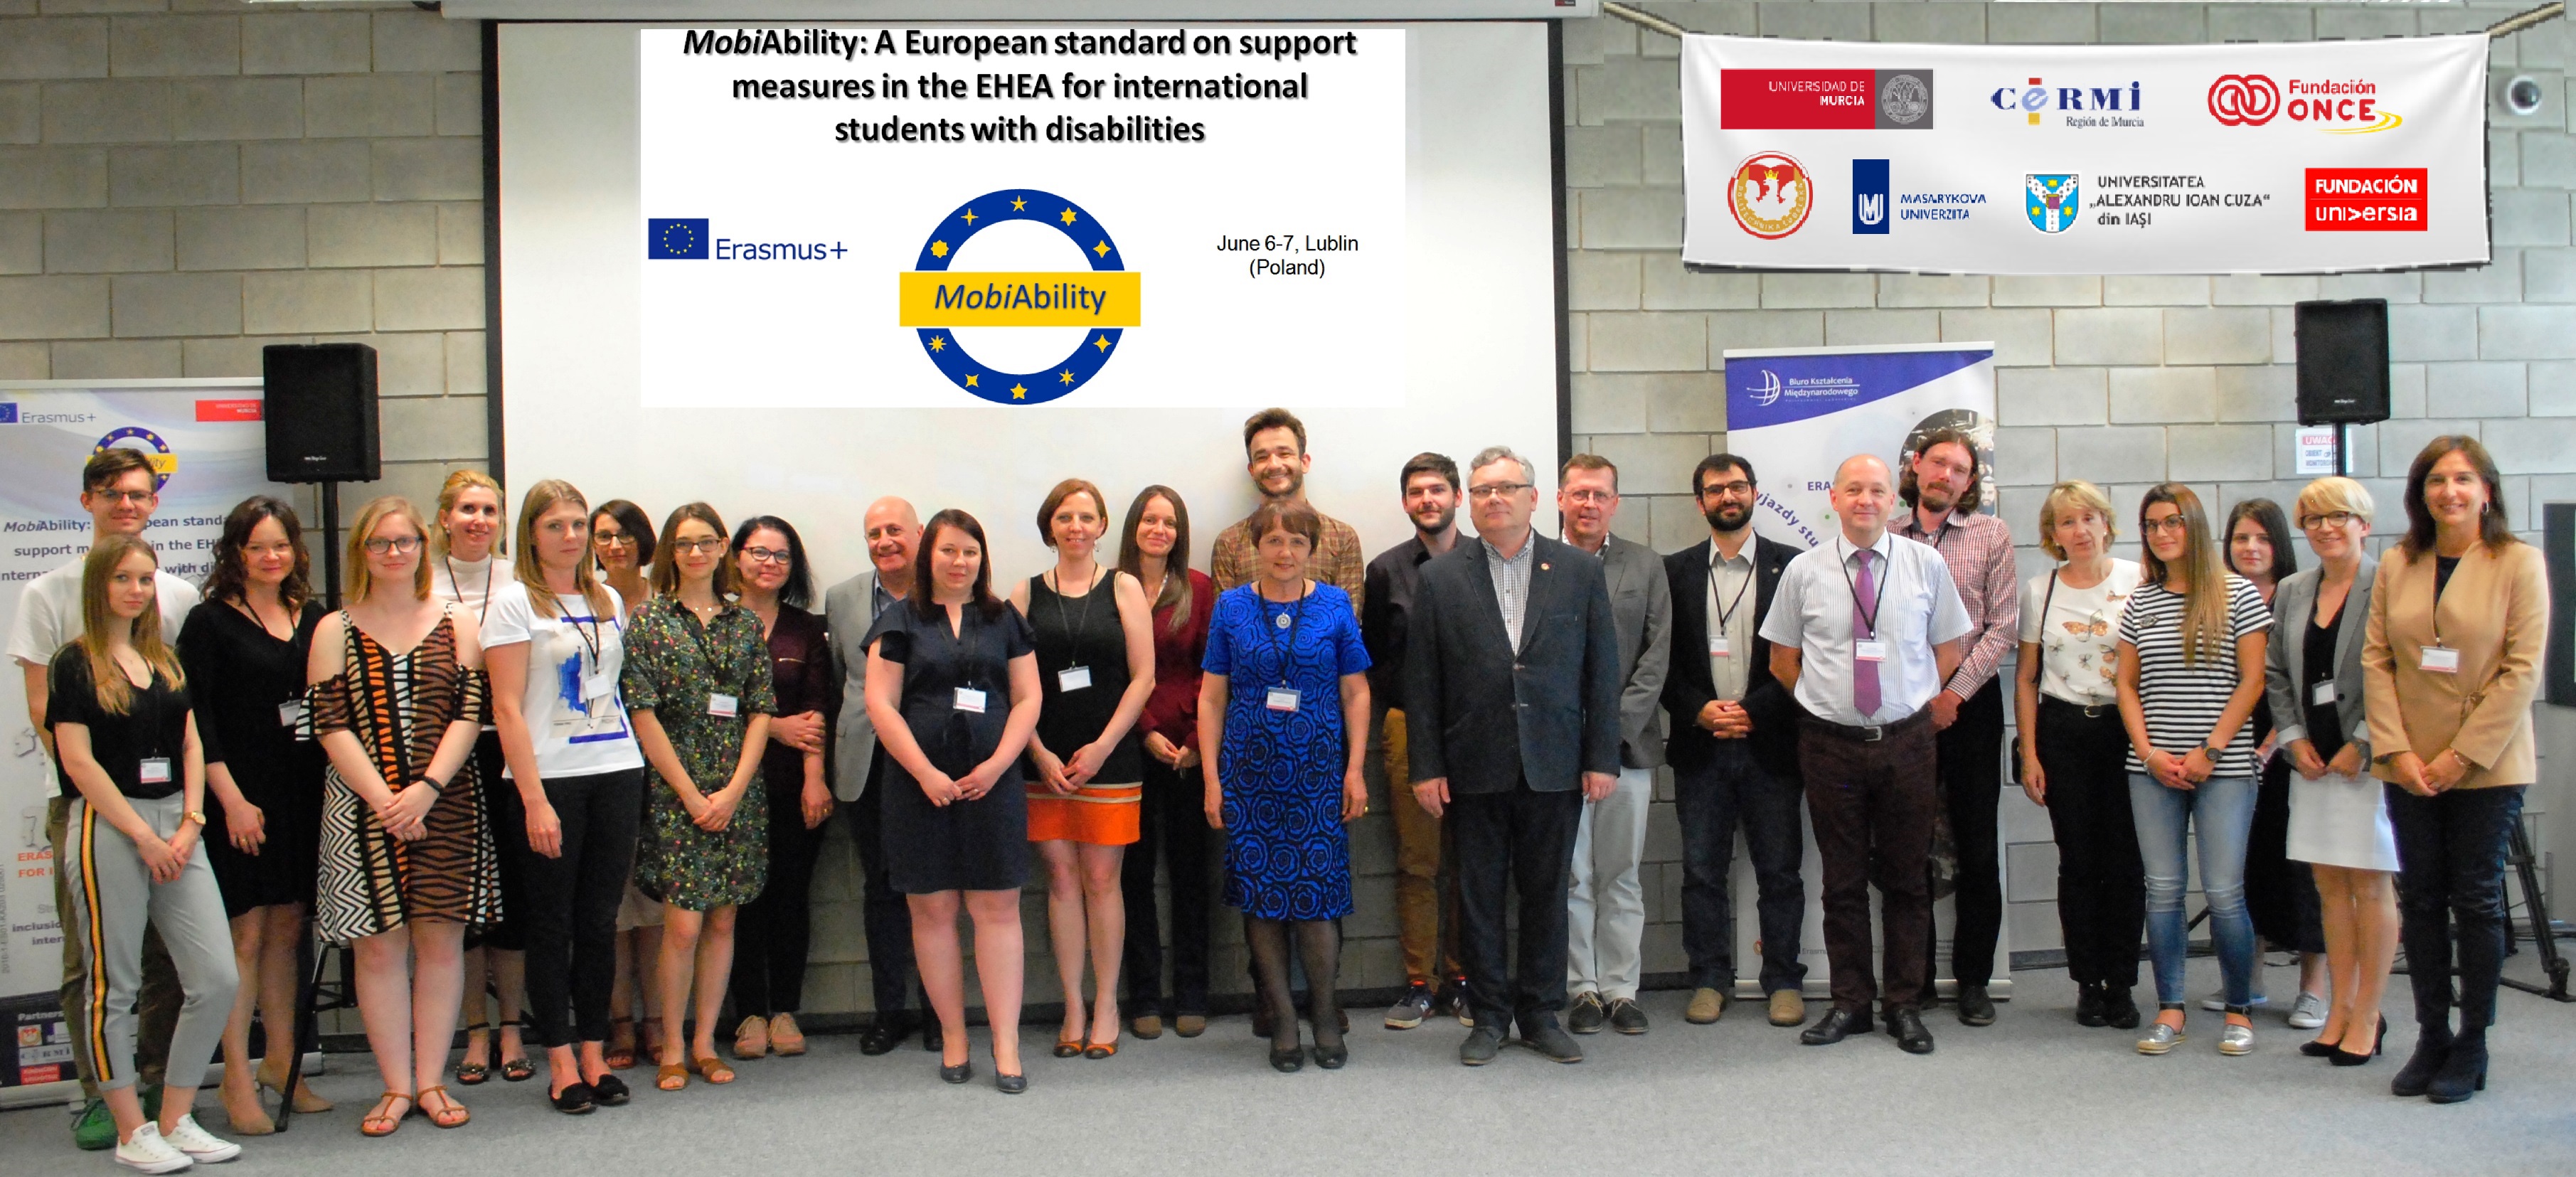 Reunión final del proyecto Erasmus+ MobiAbility para impulsar la participación de estudiantes con necesidades especiales en programas de movilidad